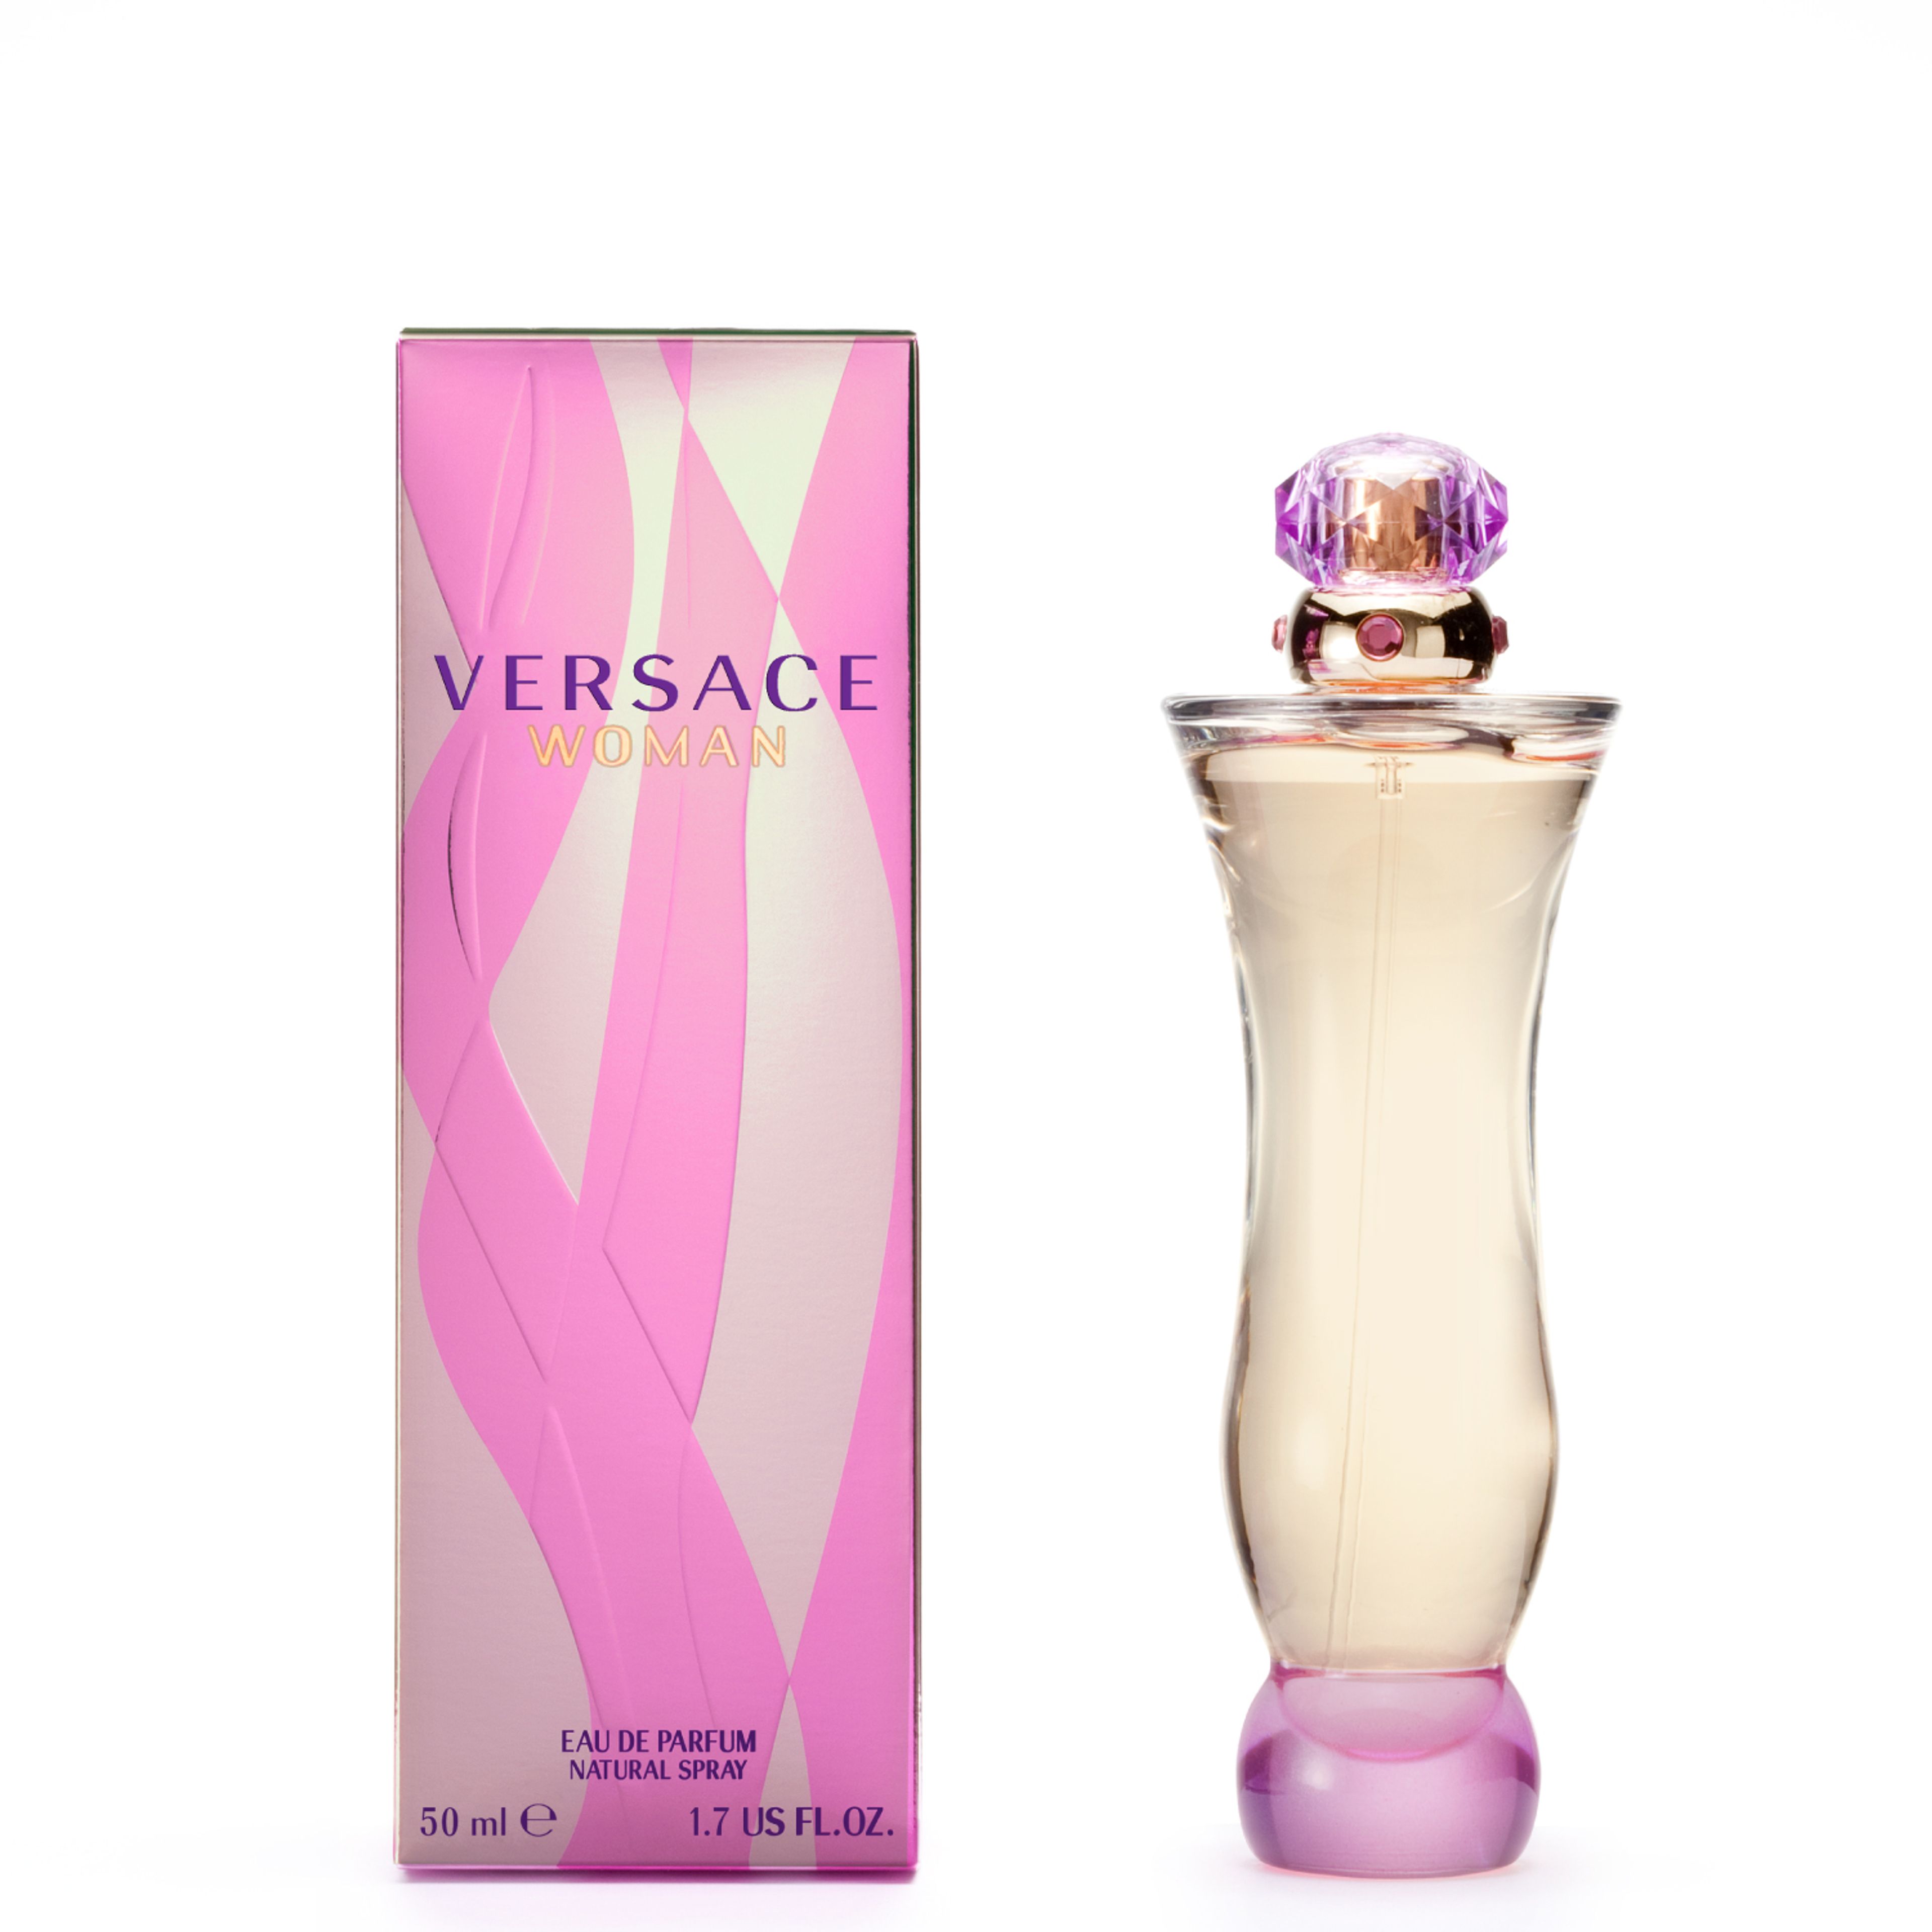 Versace Versace Woman Pour Femme Eau De Parfum 2